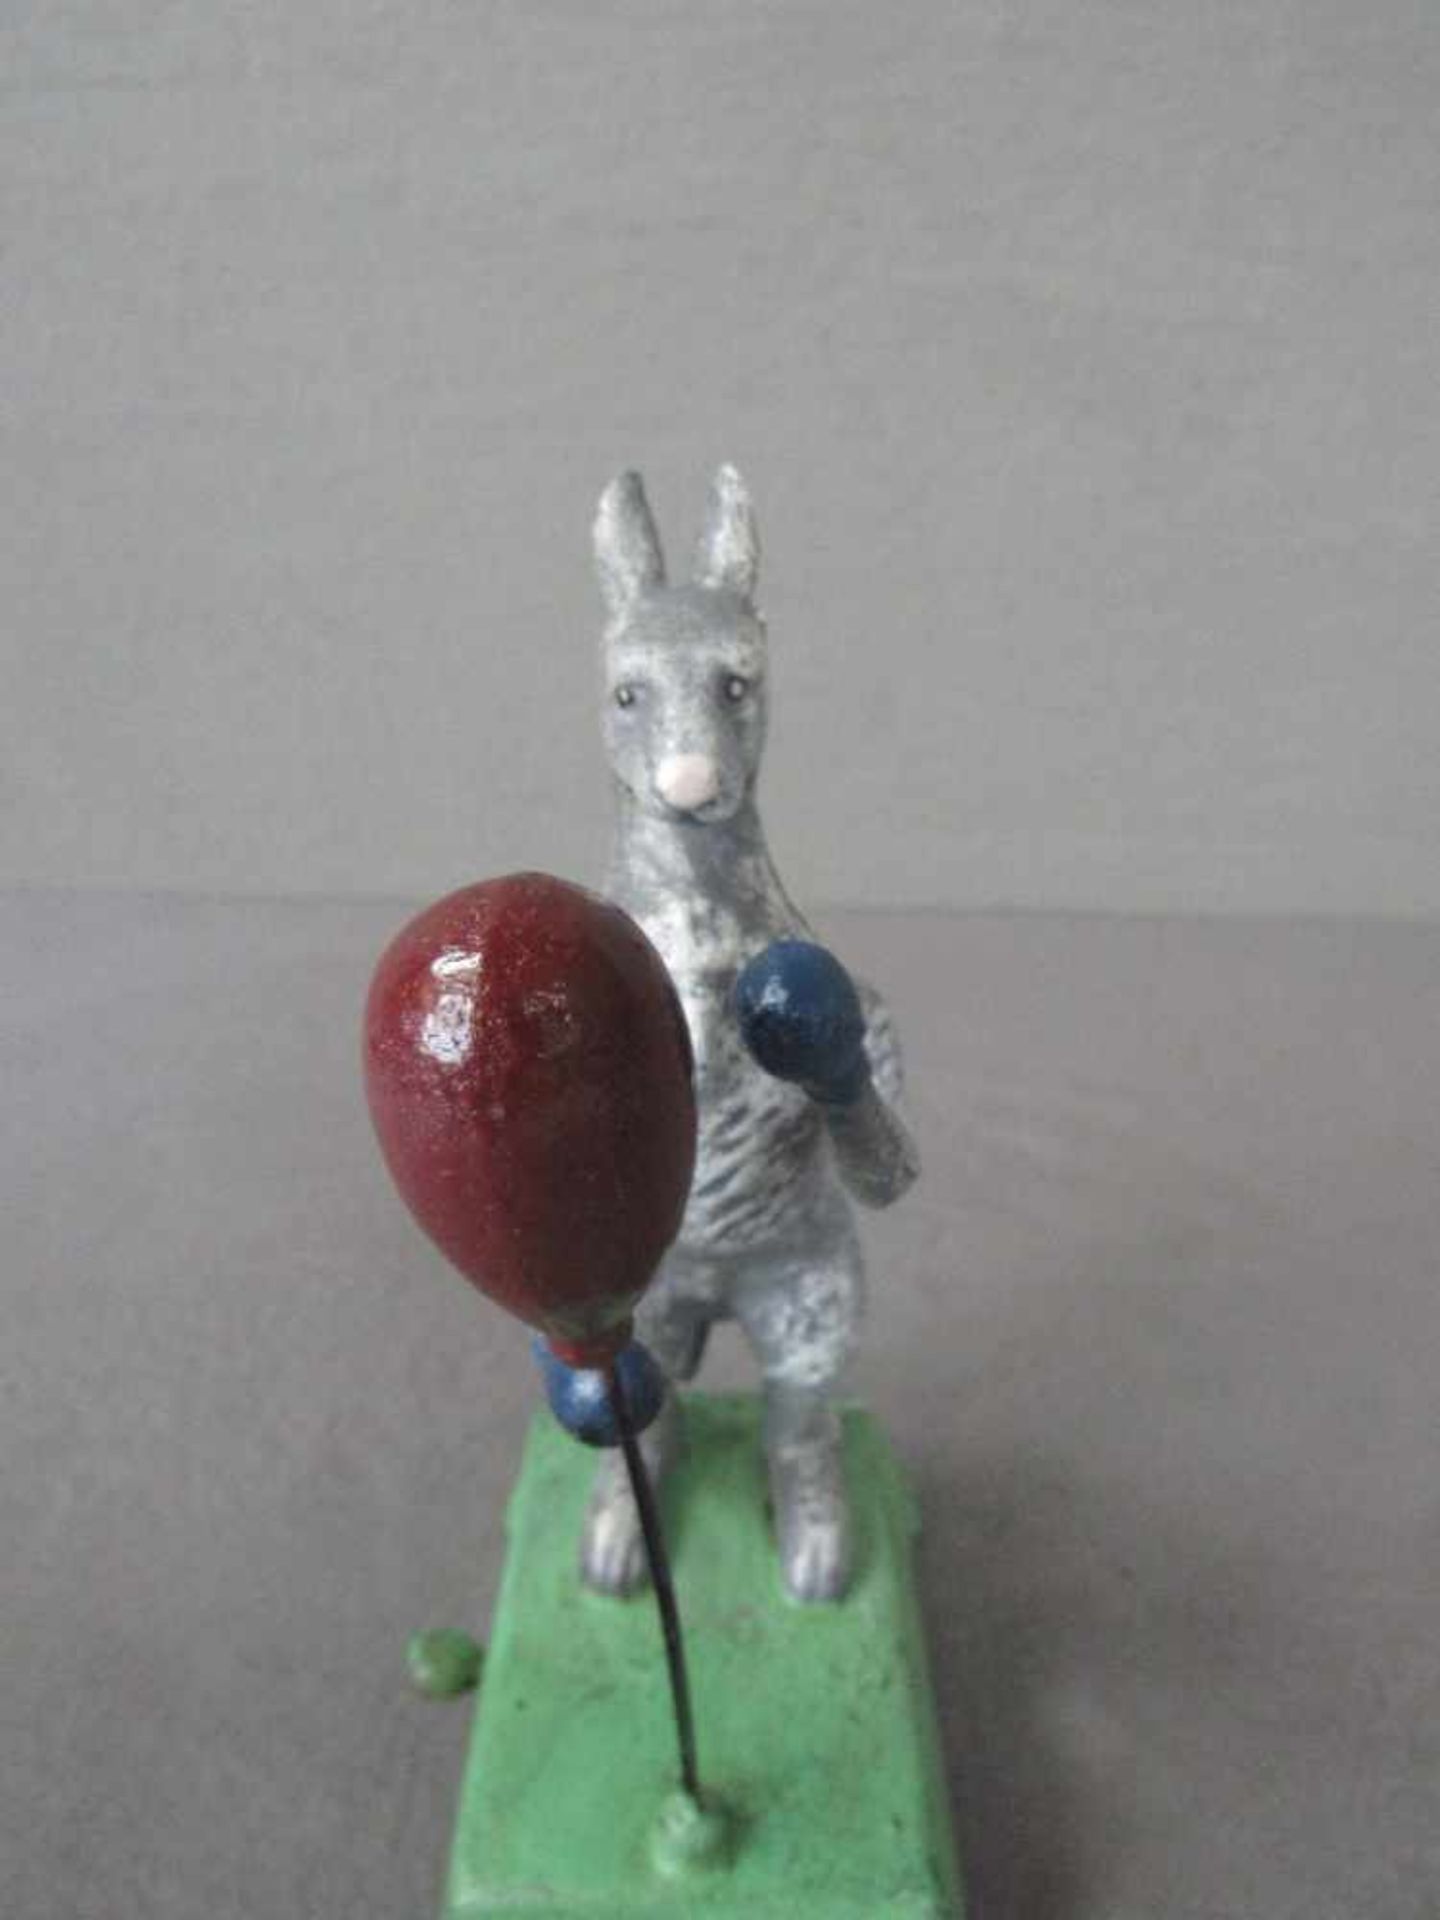 Gußeisernes mechanisches Spielzeug boxendes Känguru farbig gefaßt 20cm hoch - Bild 5 aus 5